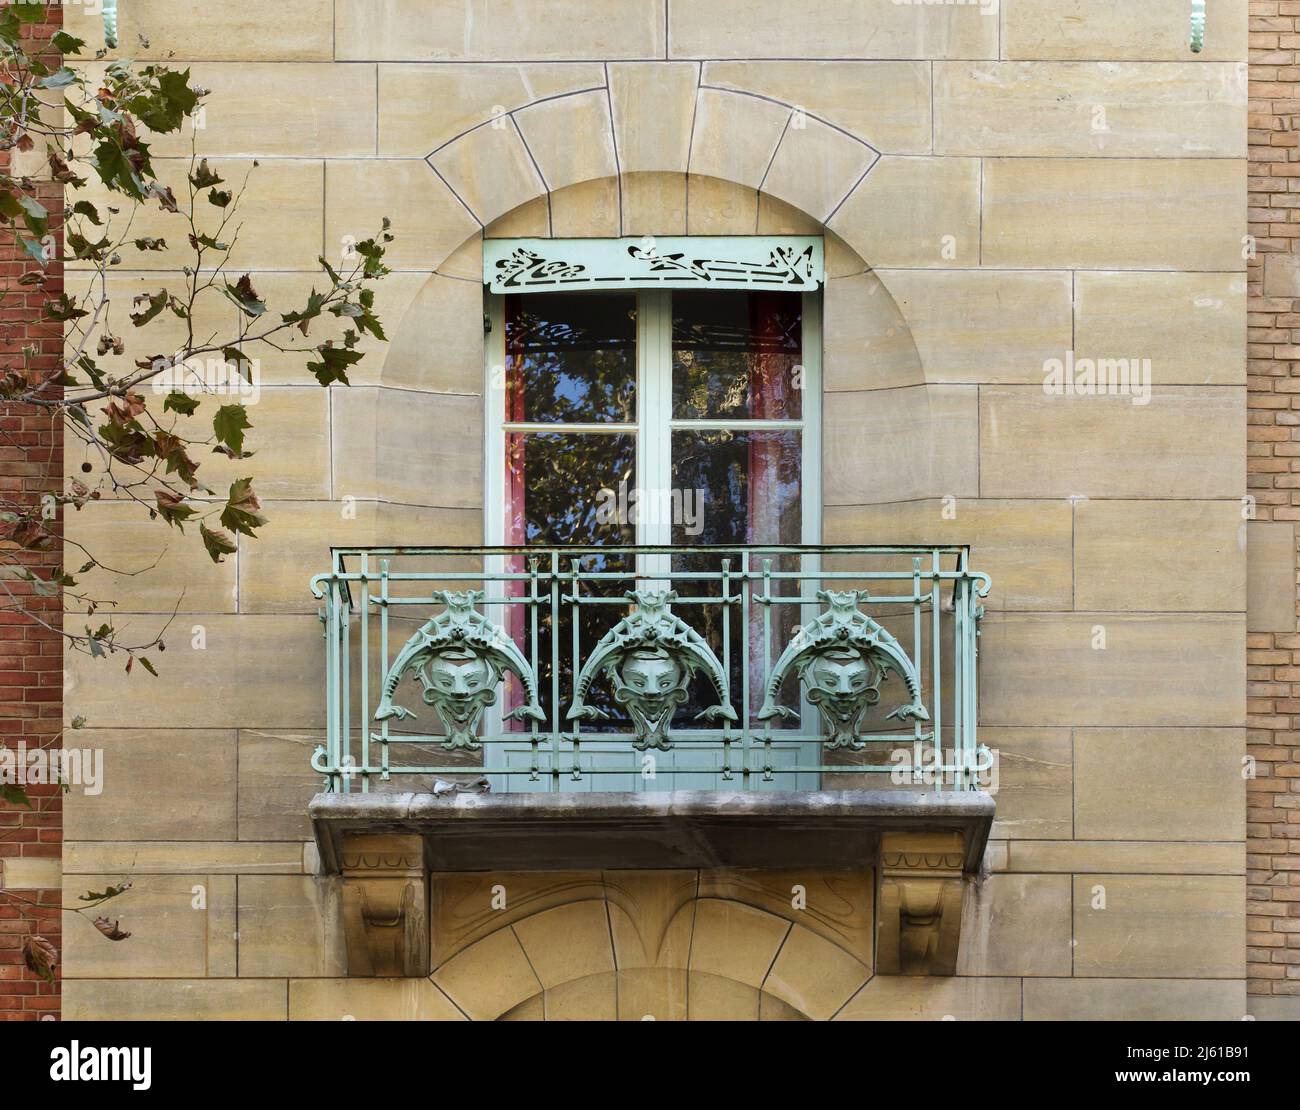 Una de las ventanas del Castel Béranger en París, Francia. El edificio residencial conocido como Castel Béranger fue diseñado por el arquitecto francés Héctor Guimard y construido entre 1895 y 1898 en Rue de la Fontaine. Fue el primer edificio de París en el estilo conocido como Art Nouveau. Foto de stock